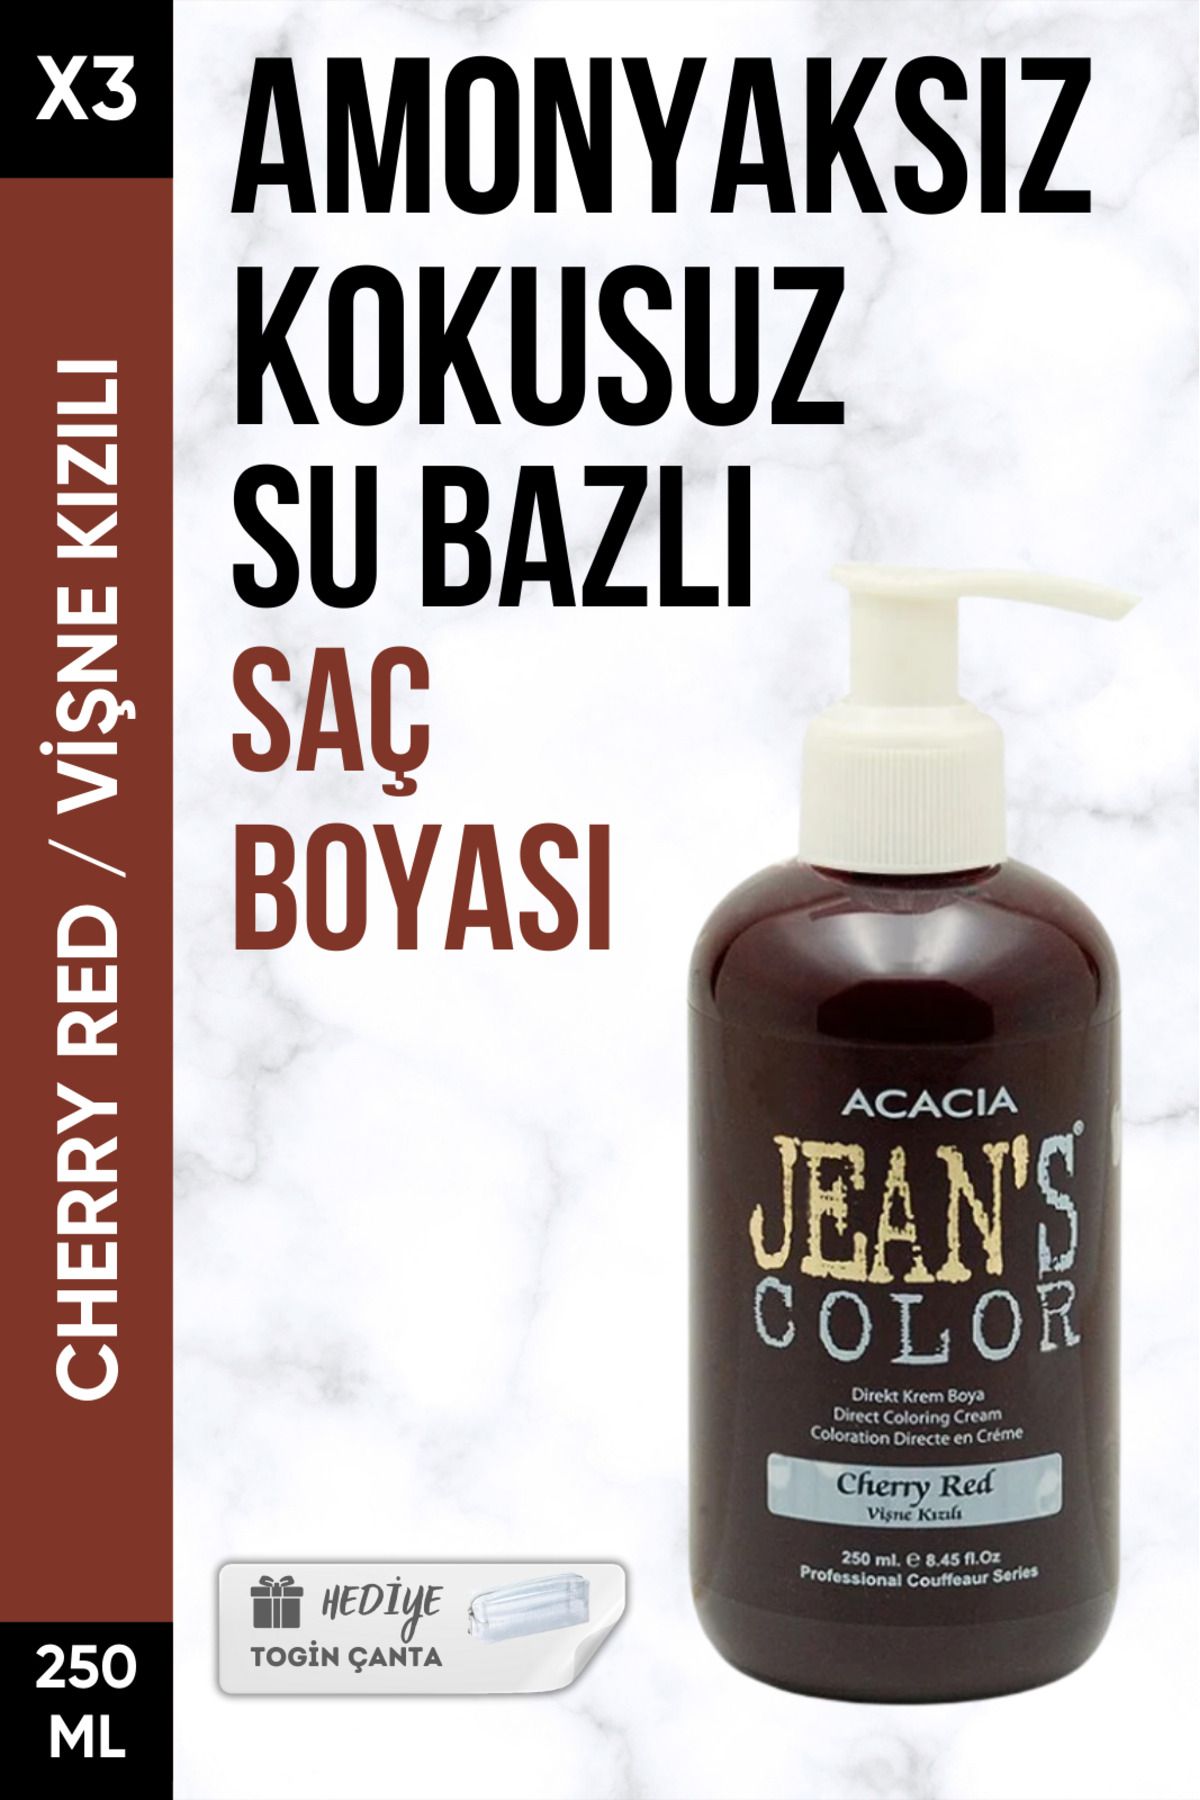 Acacia Amonyaksız Vişne Kızılı Renkli Saç Boyası 250 Ml X3 Adet + Togin Çanta Hediye